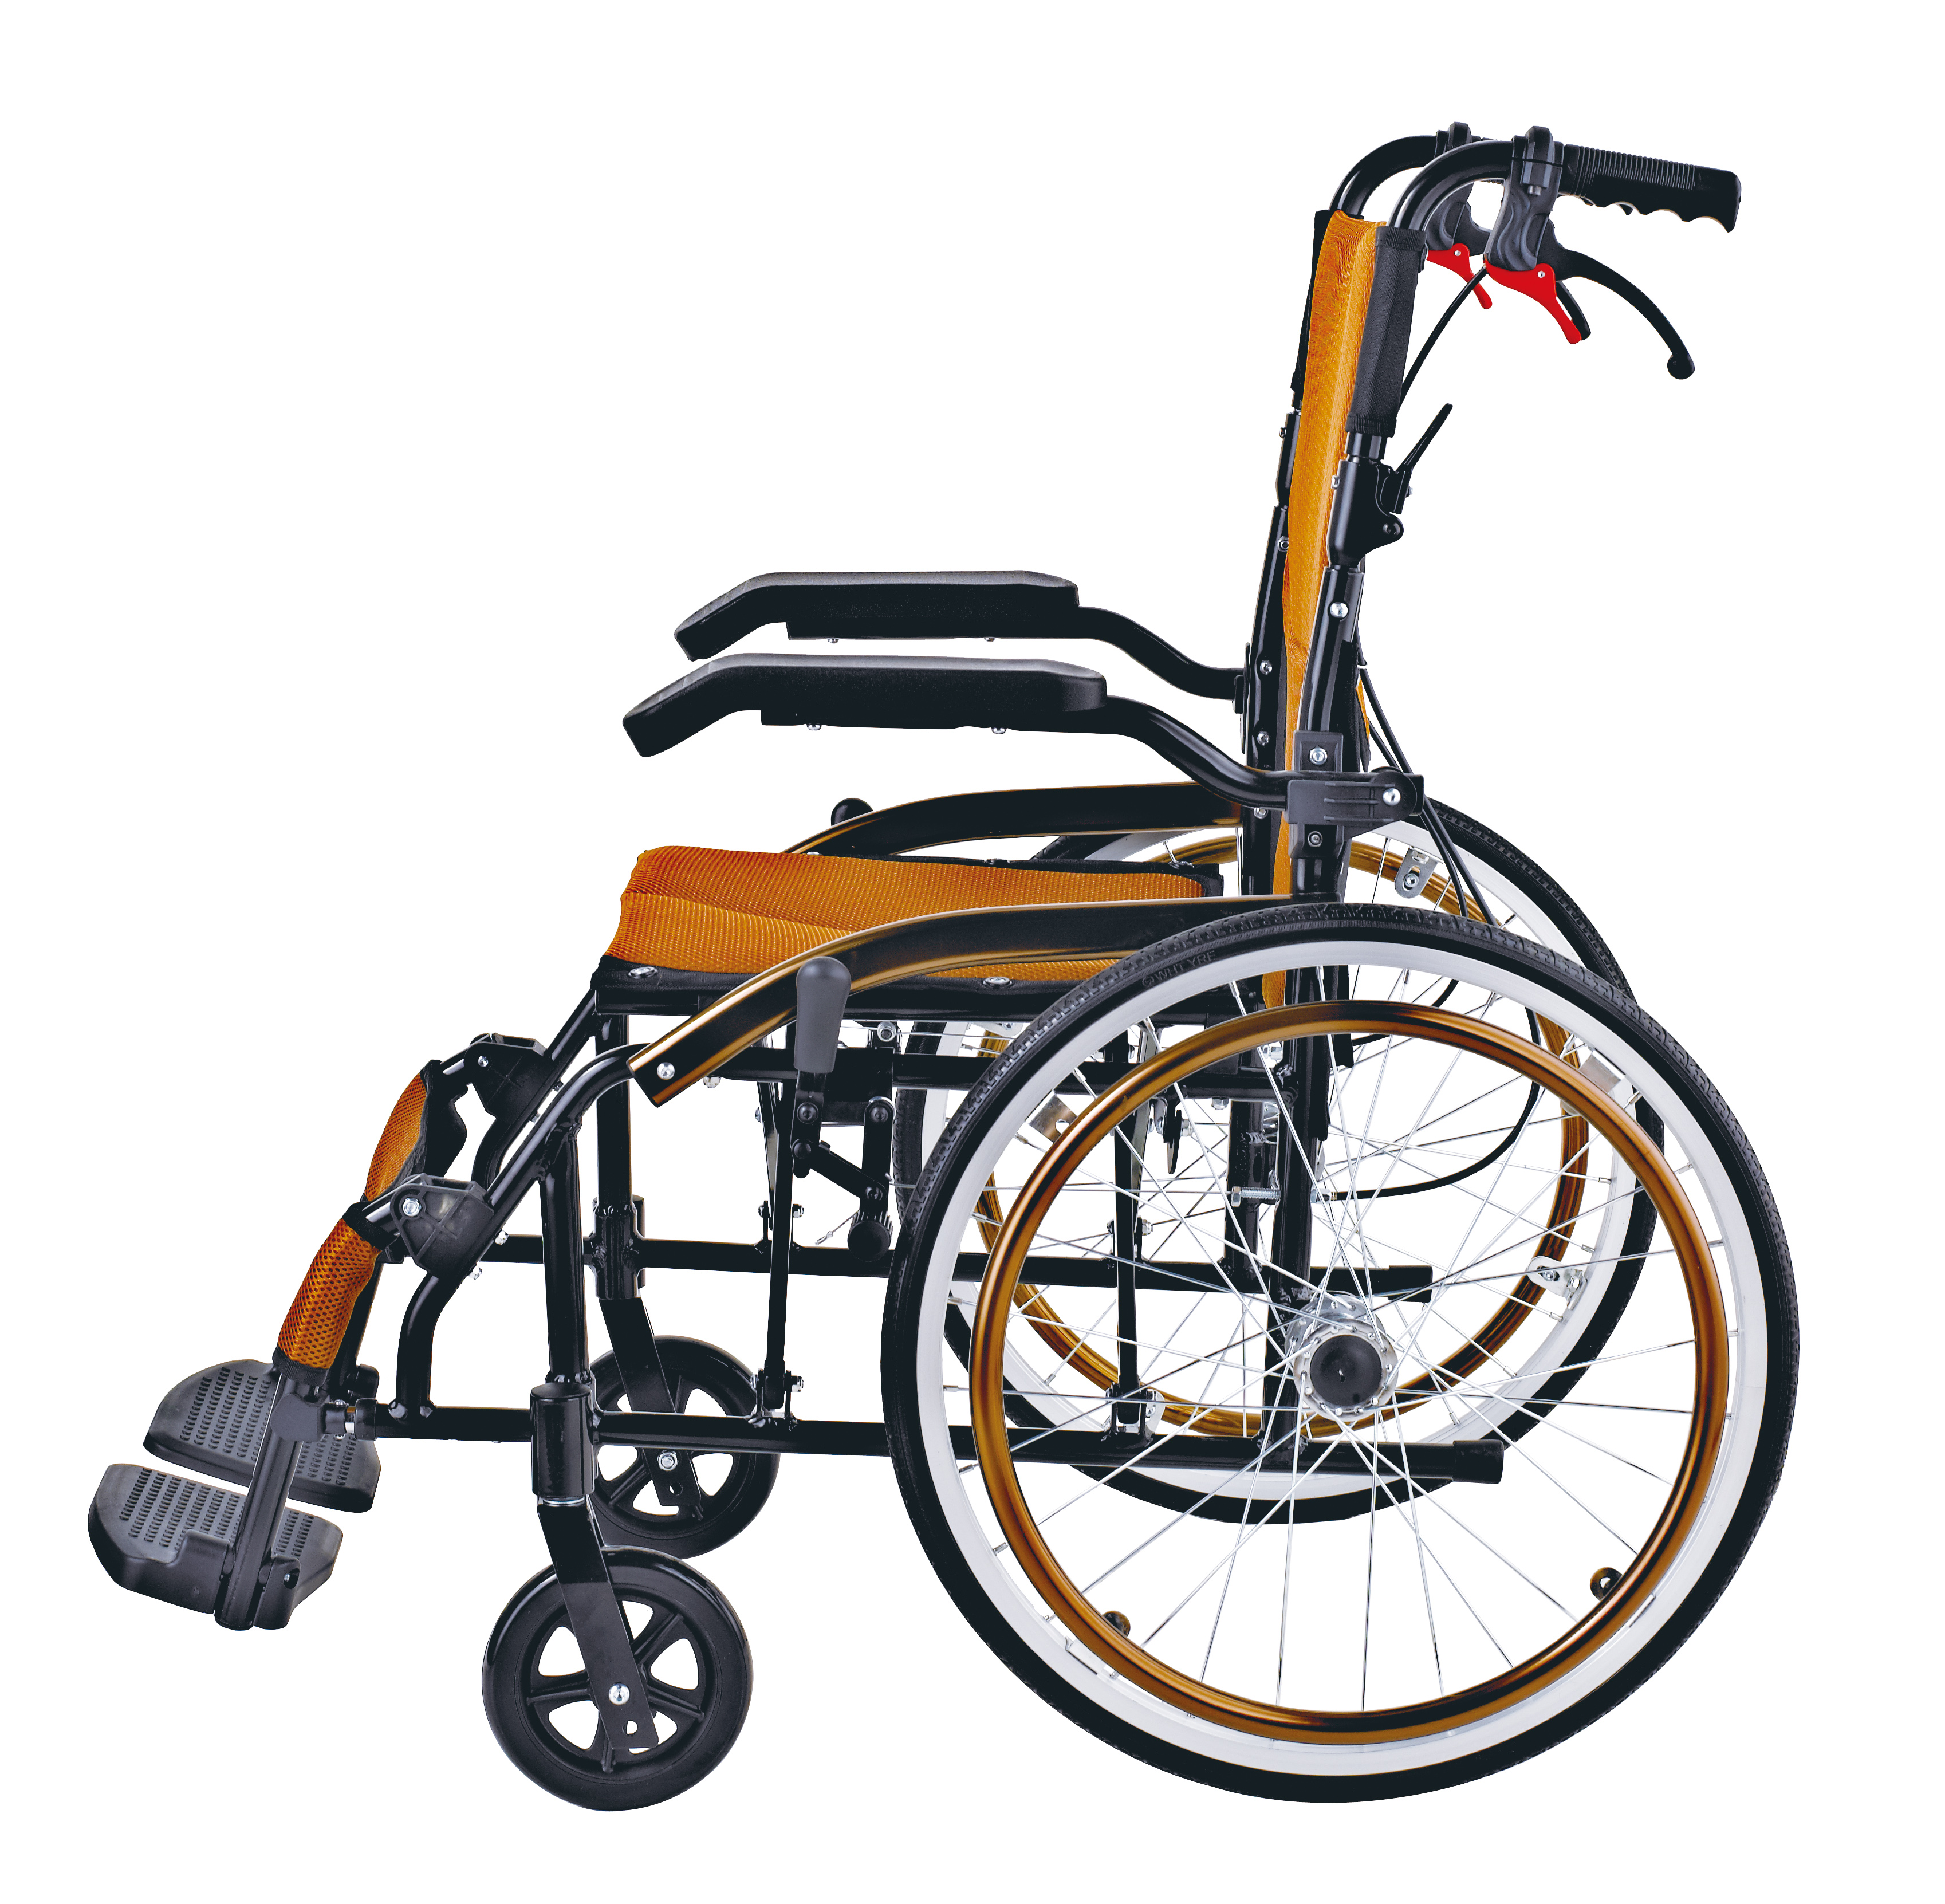 주문 알루미늄 휴대용 접이식 휠체어,알루미늄 휴대용 접이식 휠체어 가격,알루미늄 휴대용 접이식 휠체어 브랜드,알루미늄 휴대용 접이식 휠체어 제조업체,알루미늄 휴대용 접이식 휠체어 인용,알루미늄 휴대용 접이식 휠체어 회사,